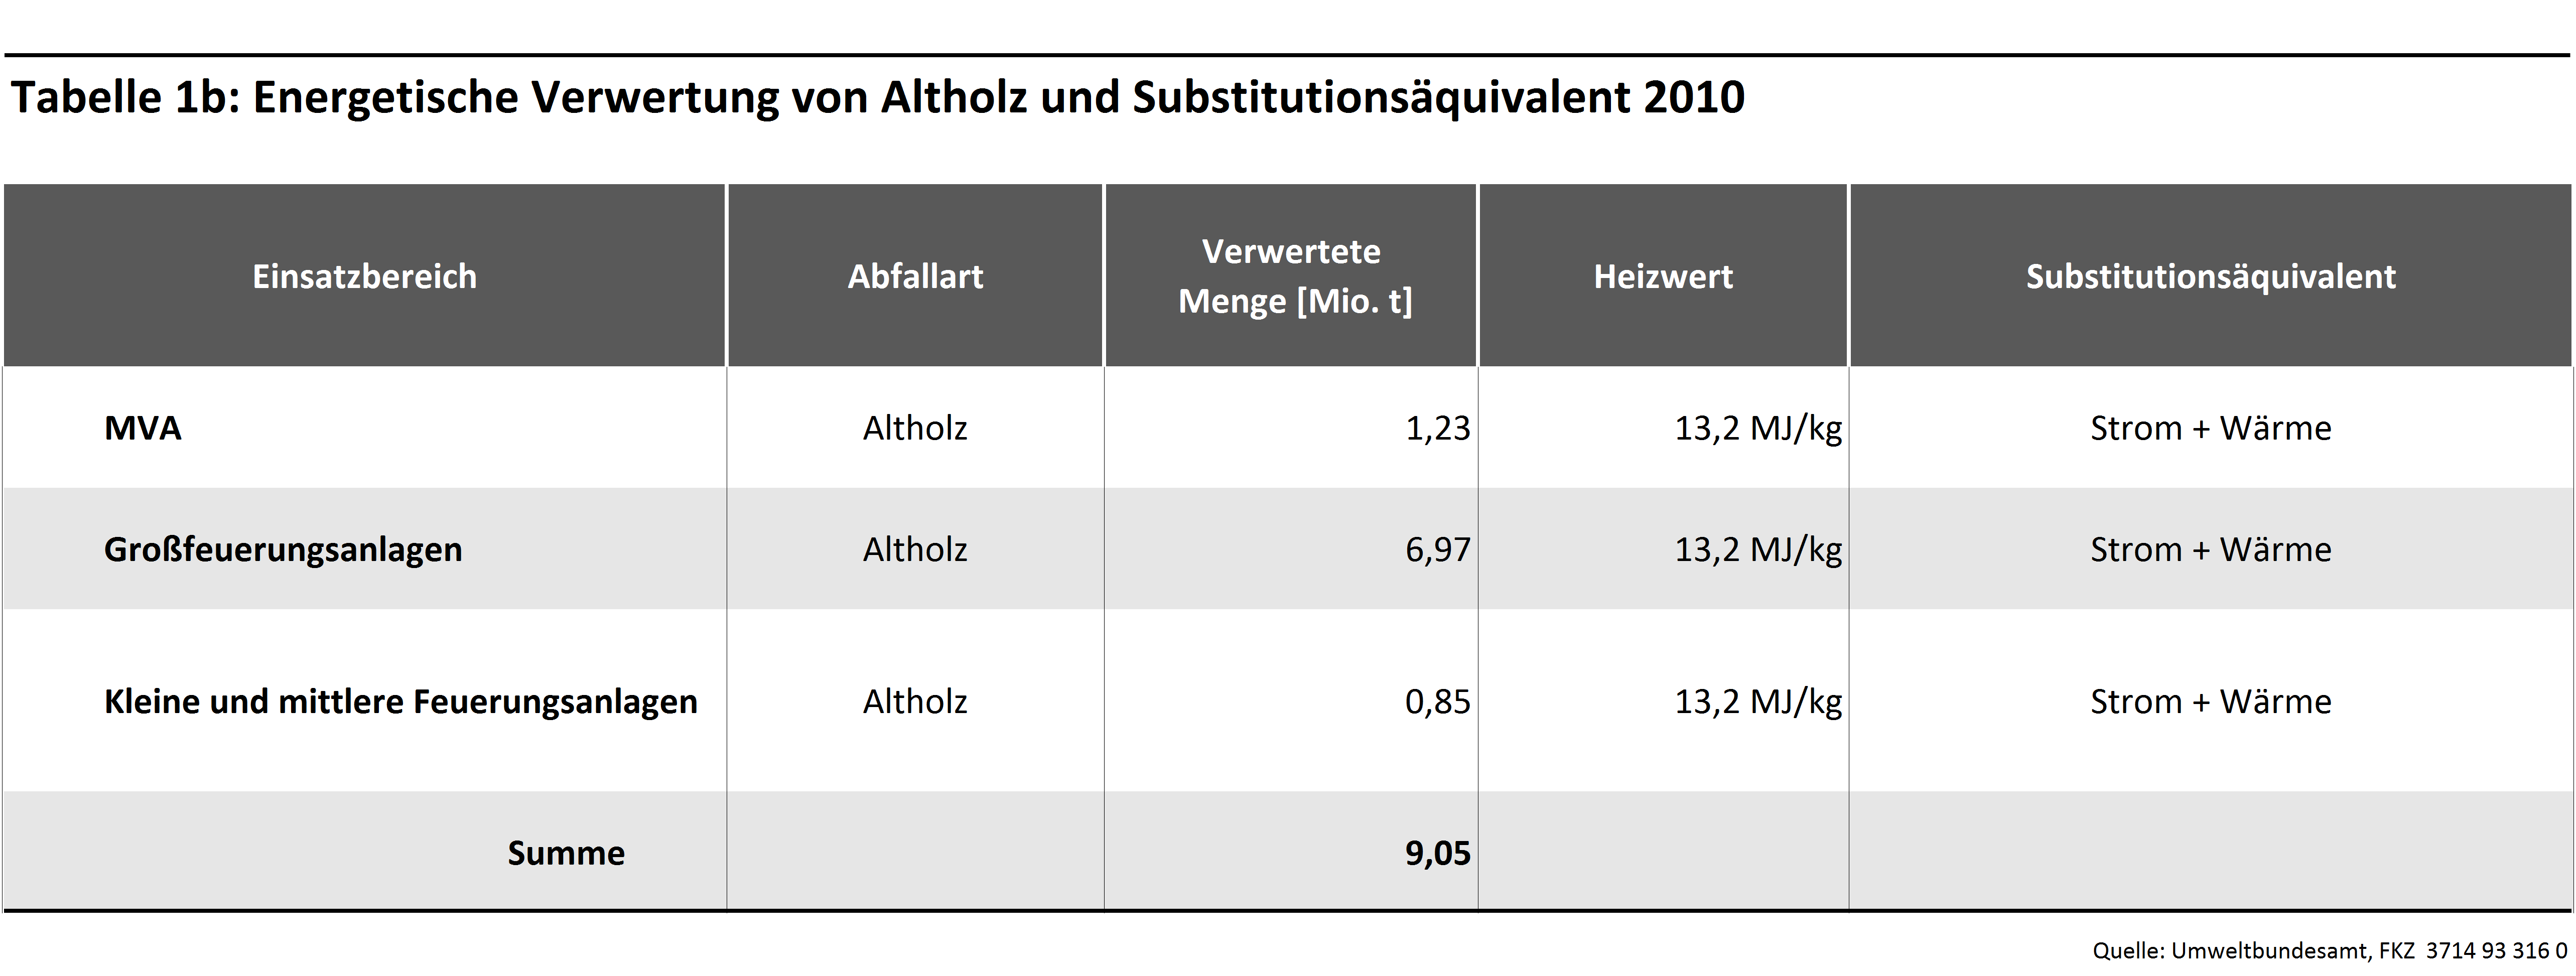 Tabelle 1b: Energetische Verwertung von Altholz und Substitutionsäquivalent 2010